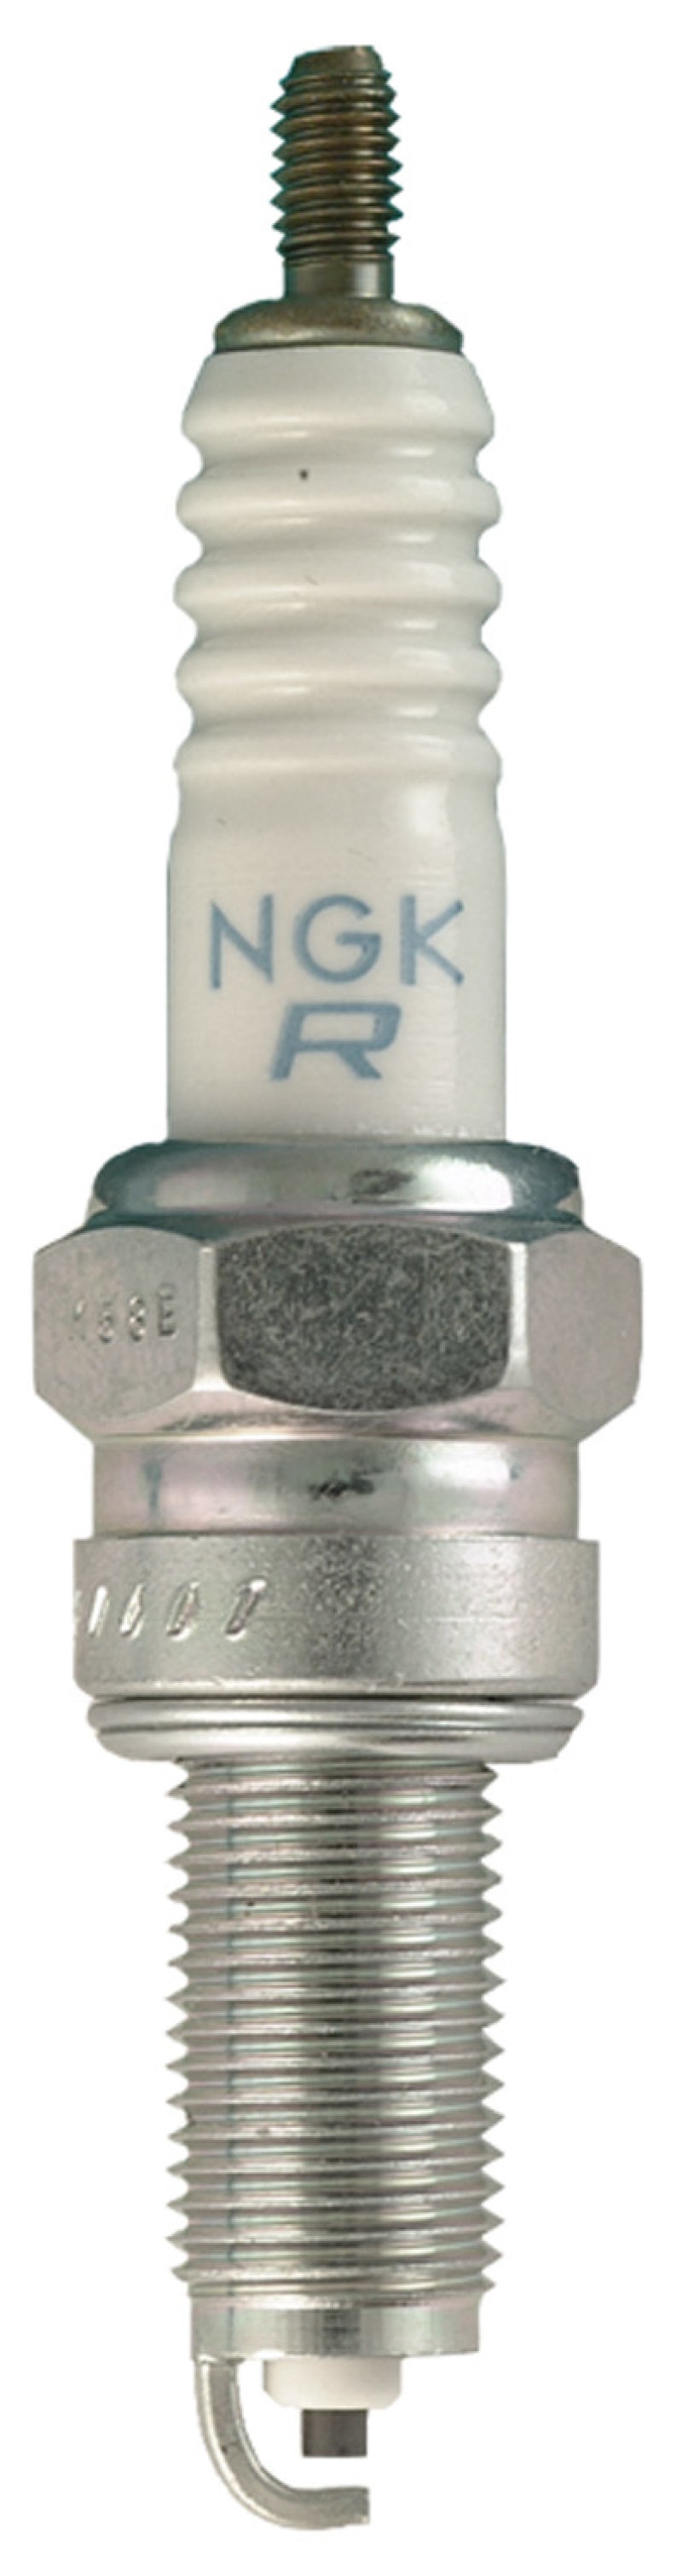 NGK Standard Spark Plug Box of 10 (CPR6EA-9S)